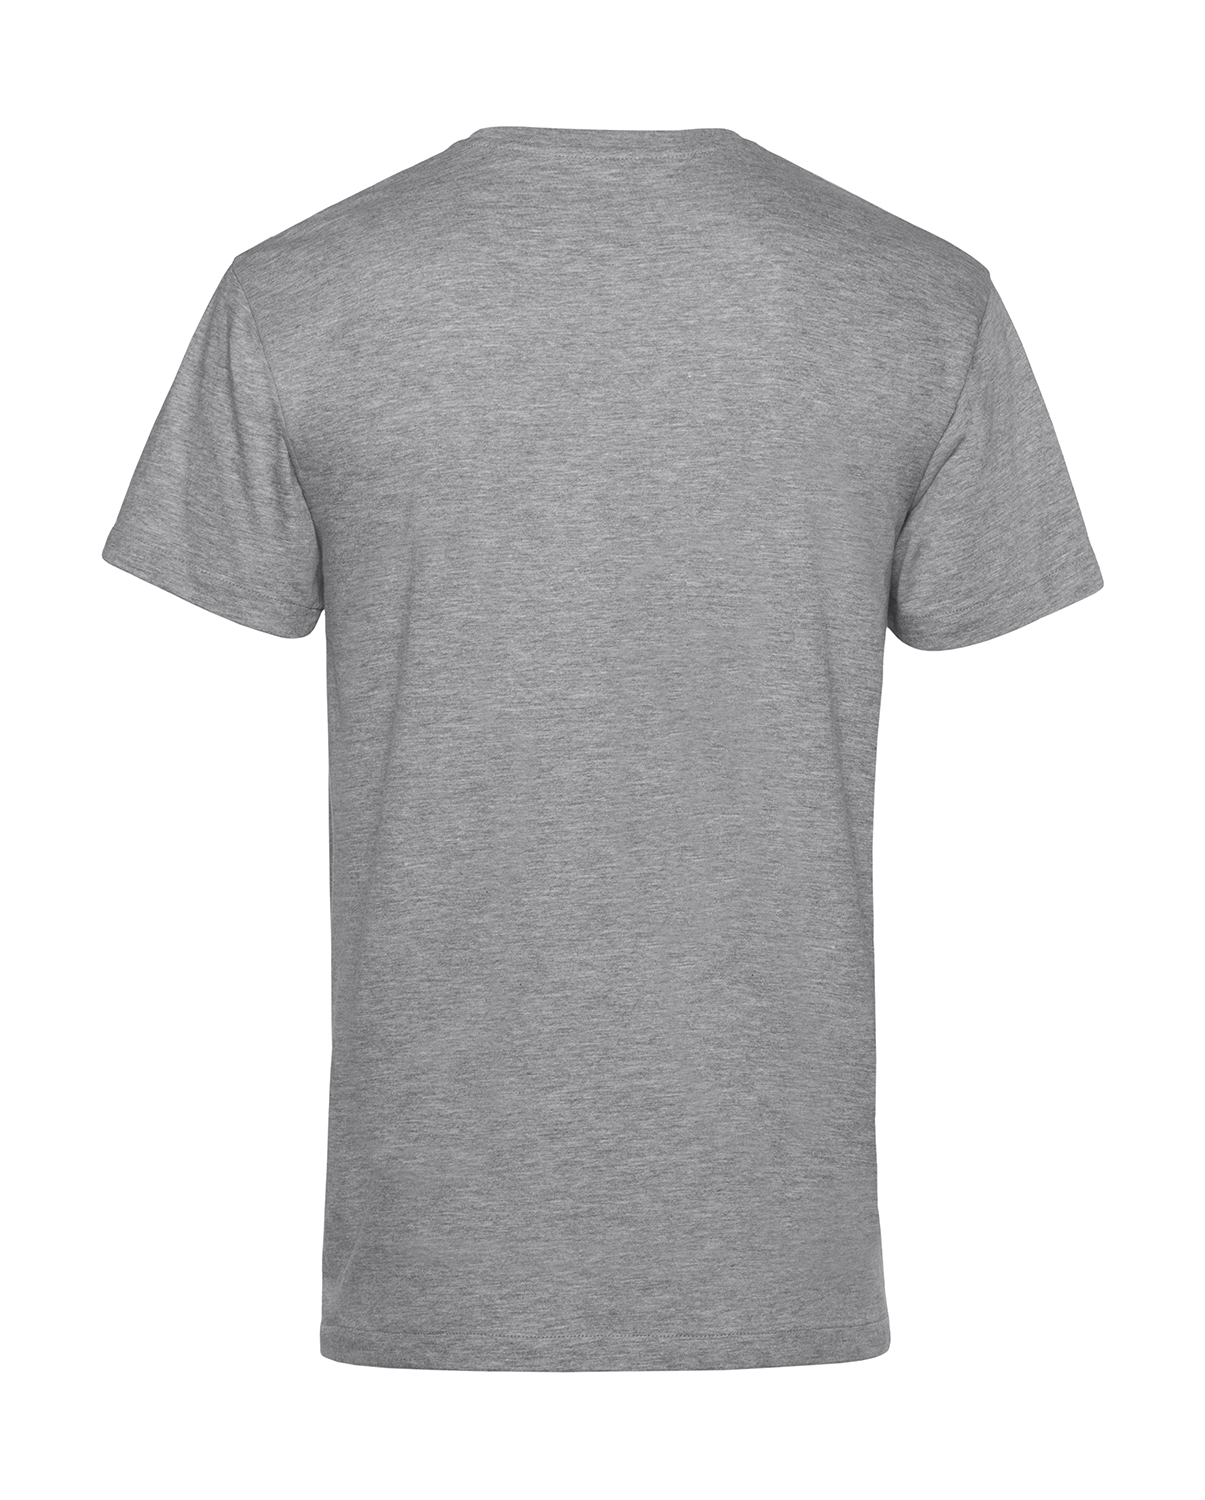 Unisex tričko Organic inspire Velikost: 5XL, Barva: Šedivá